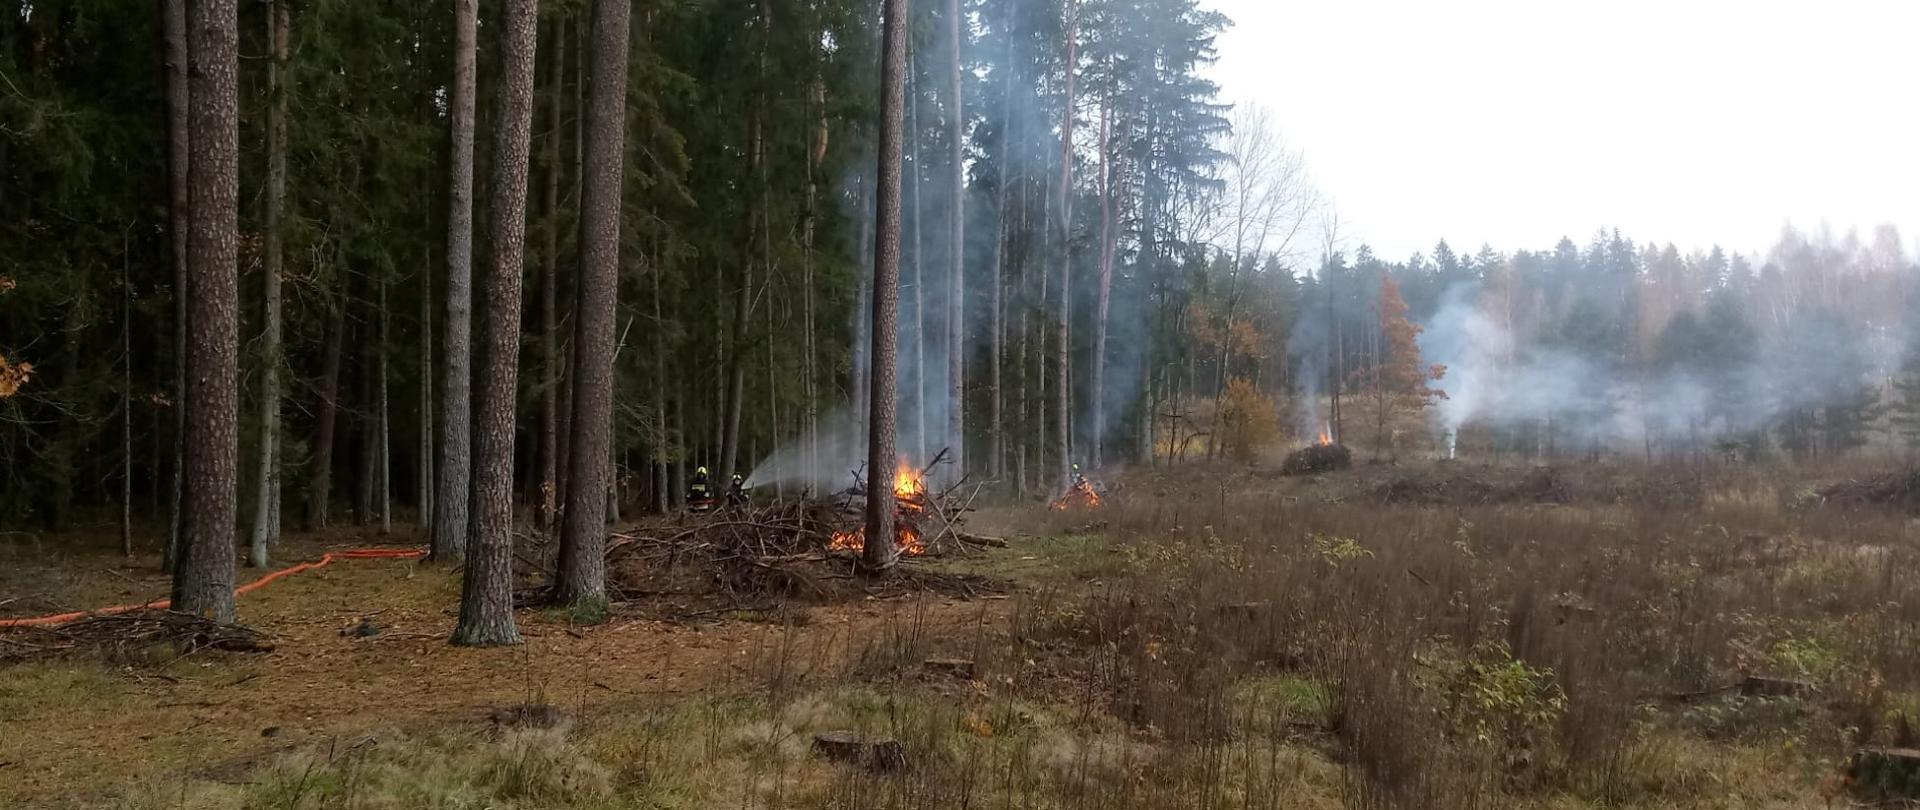 Na polanie widać palące się ogniska, które pozorują pożar lasu. 